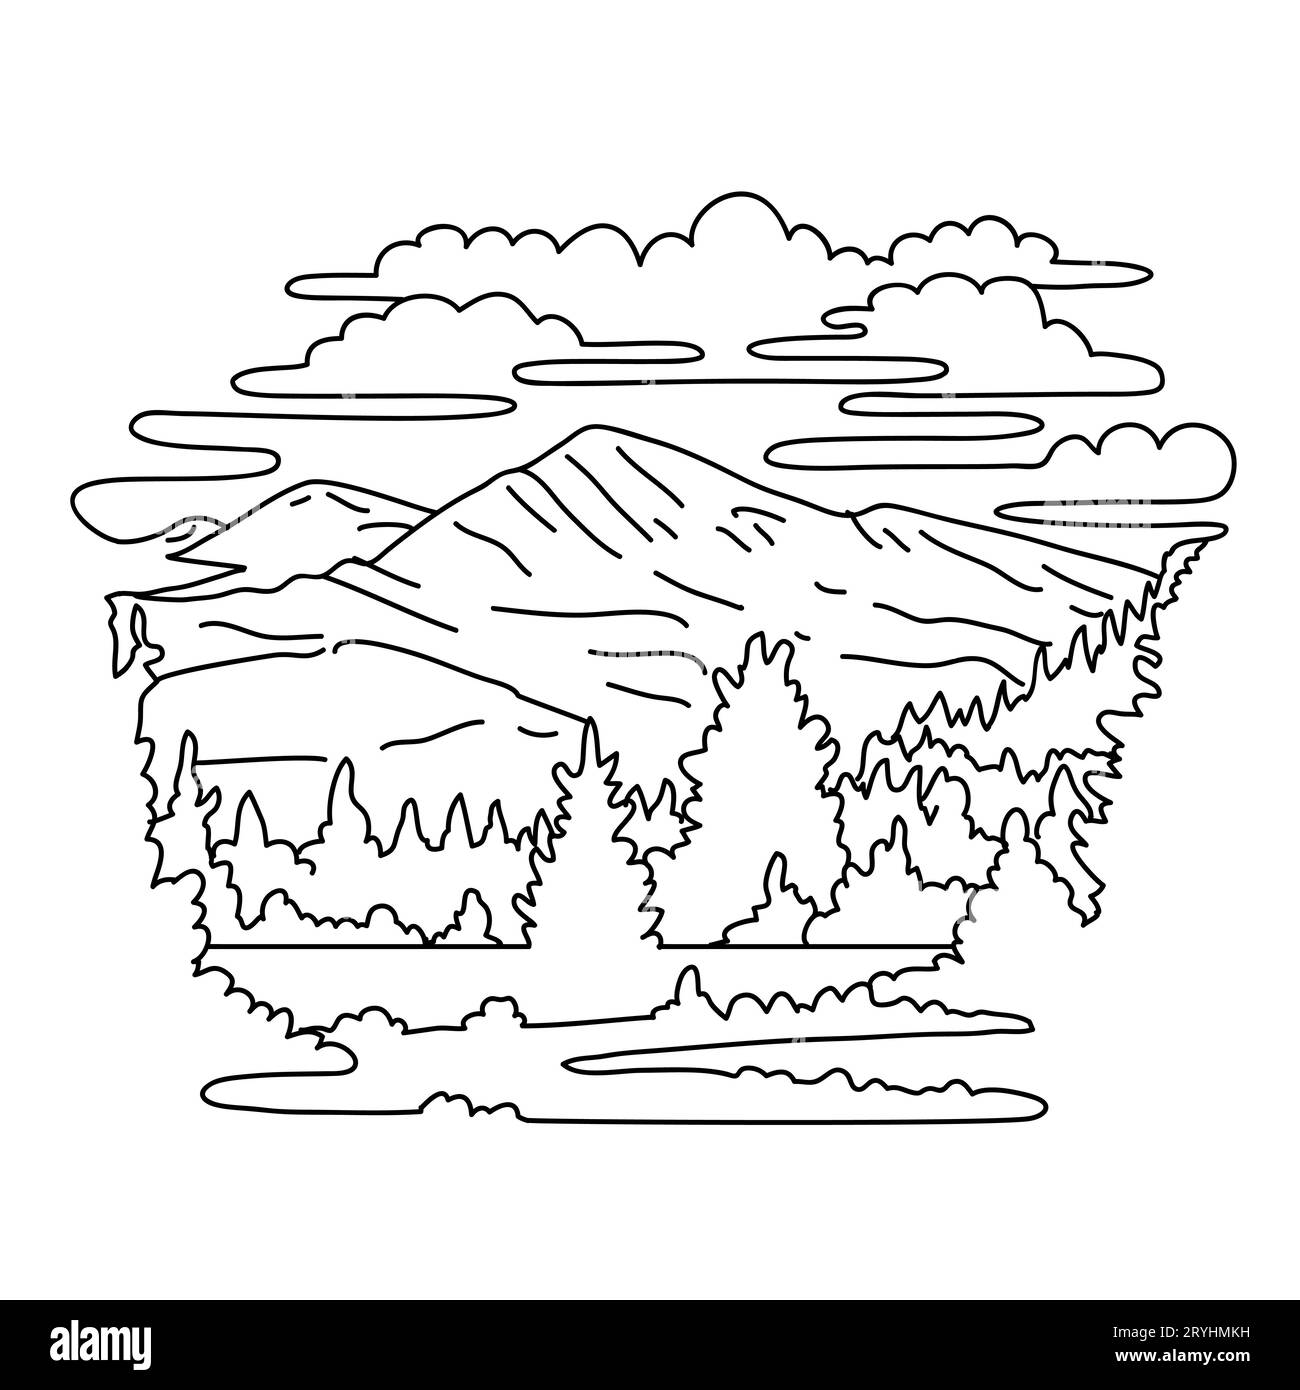 Mount Dana im Yosemite National Park und Ansel Adams Wilderness California Monoline Line Art Zeichnung Stockfoto